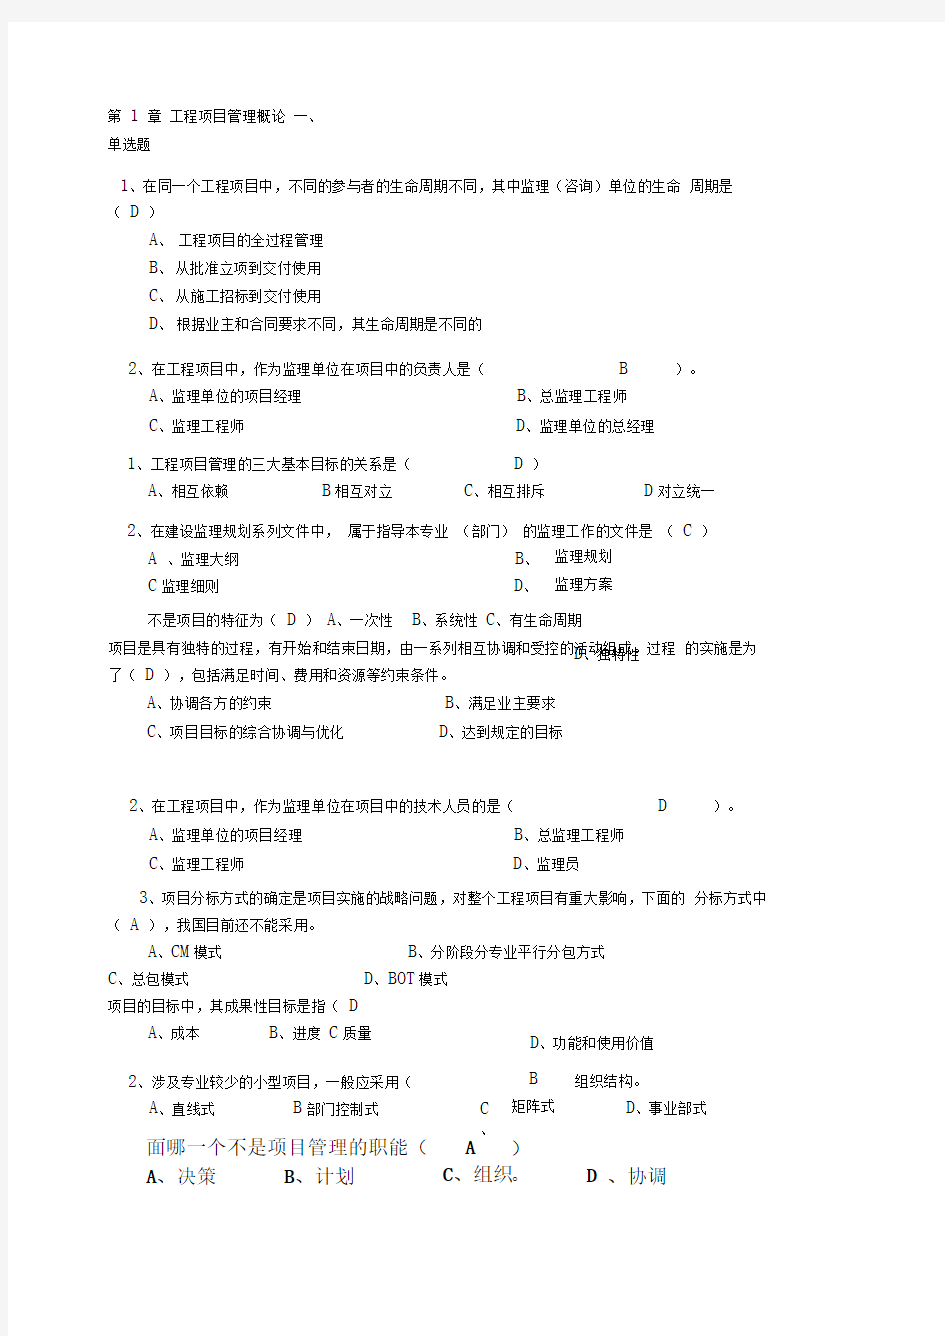 习题作业-华中科技大学-工程项目管理